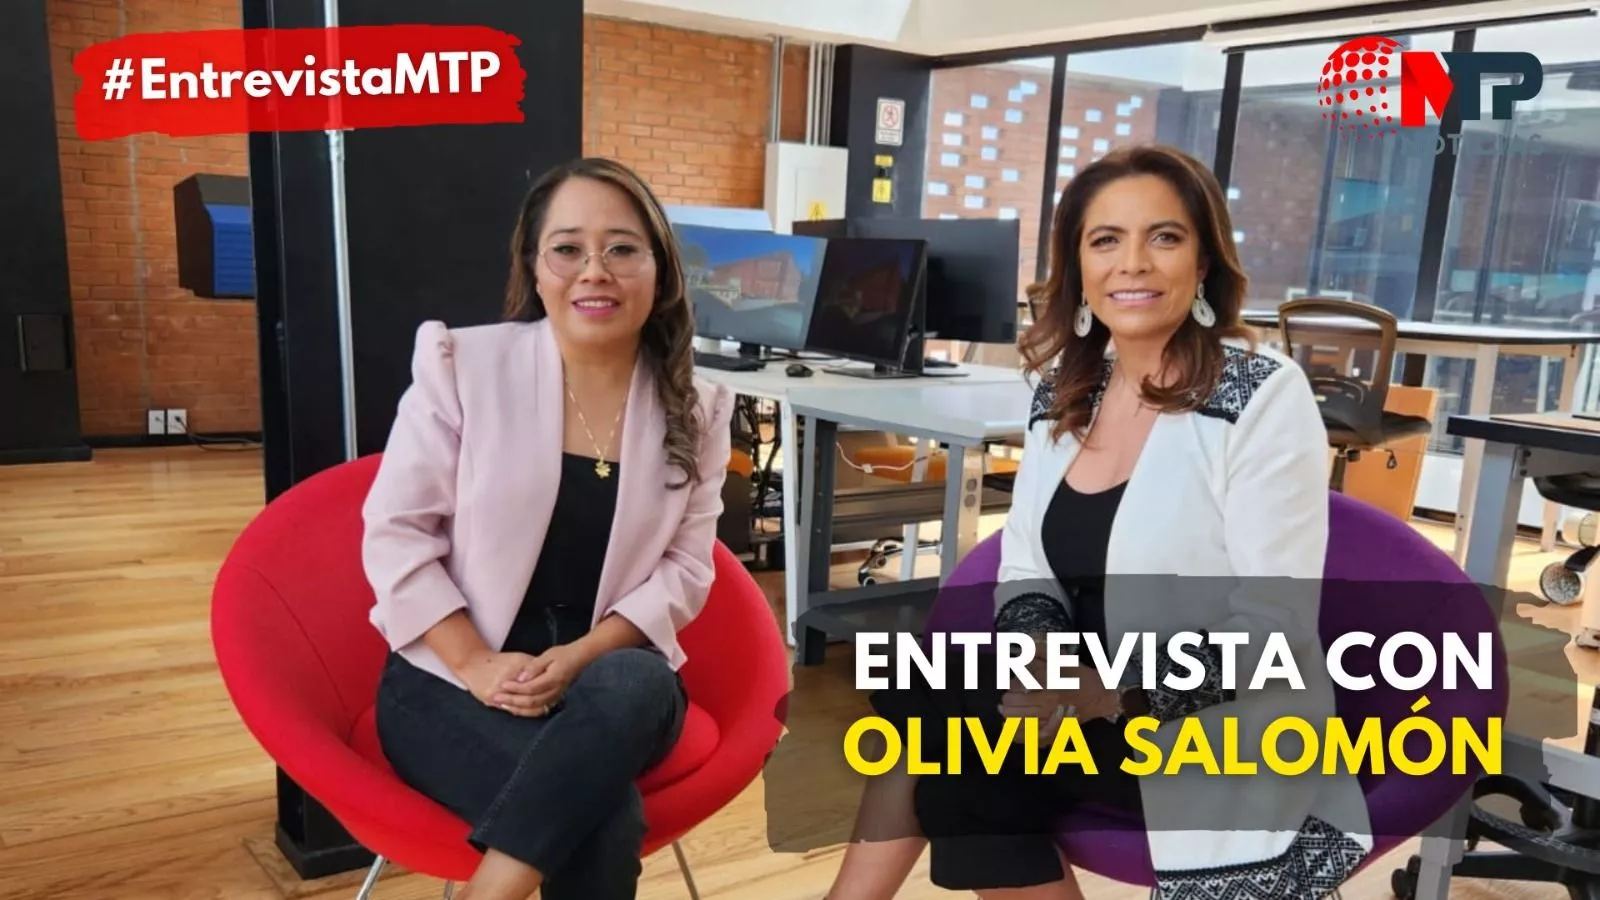 “Voy por gubernatura de Puebla y ganaré la encuesta”: Olivia Salomón